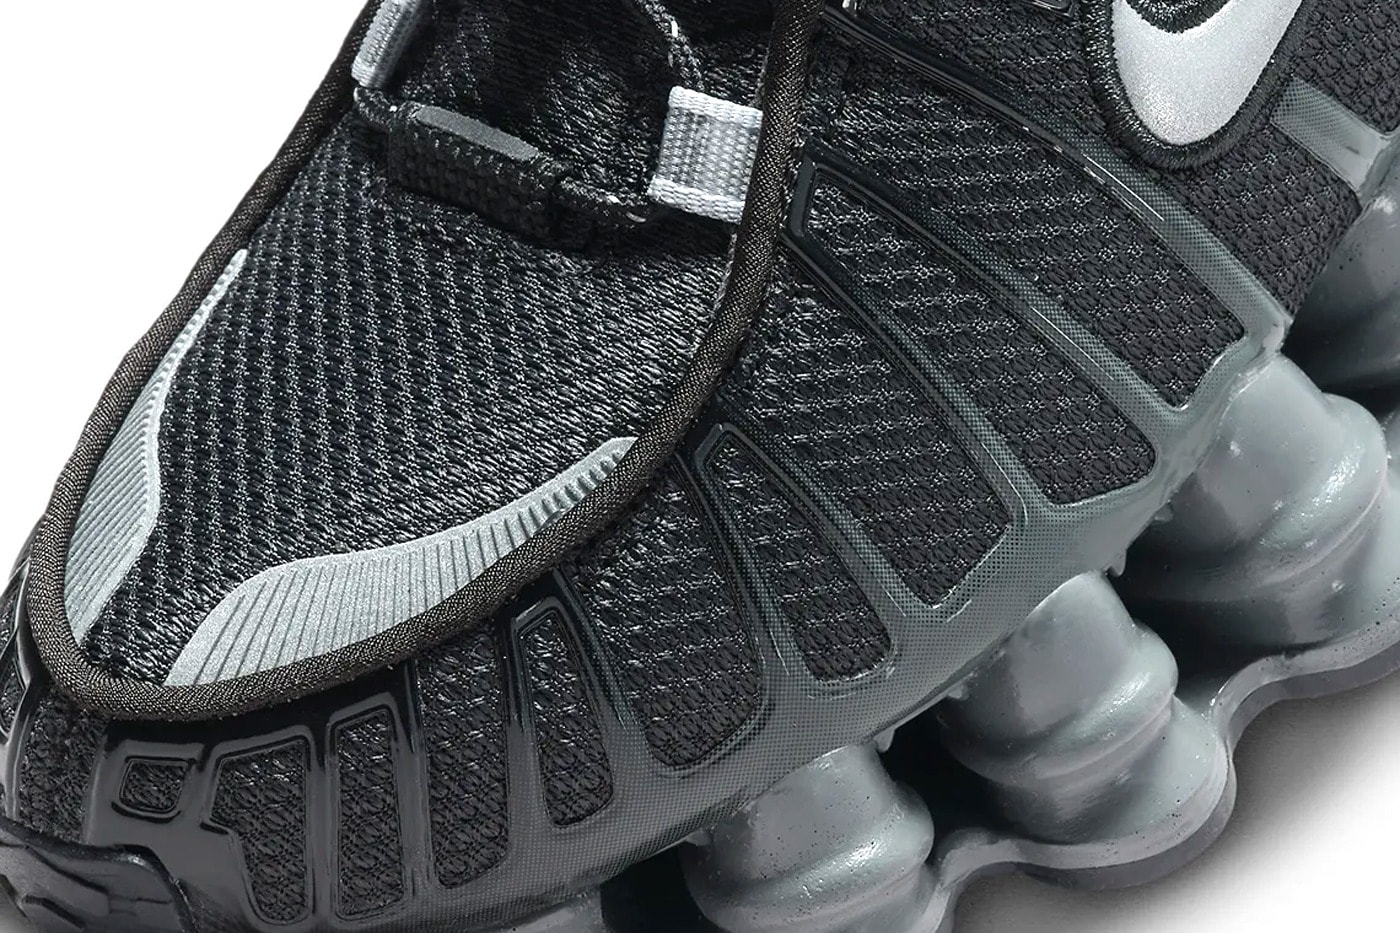 Nike Shox TL 全新配色「Black/Grey」率先曝光